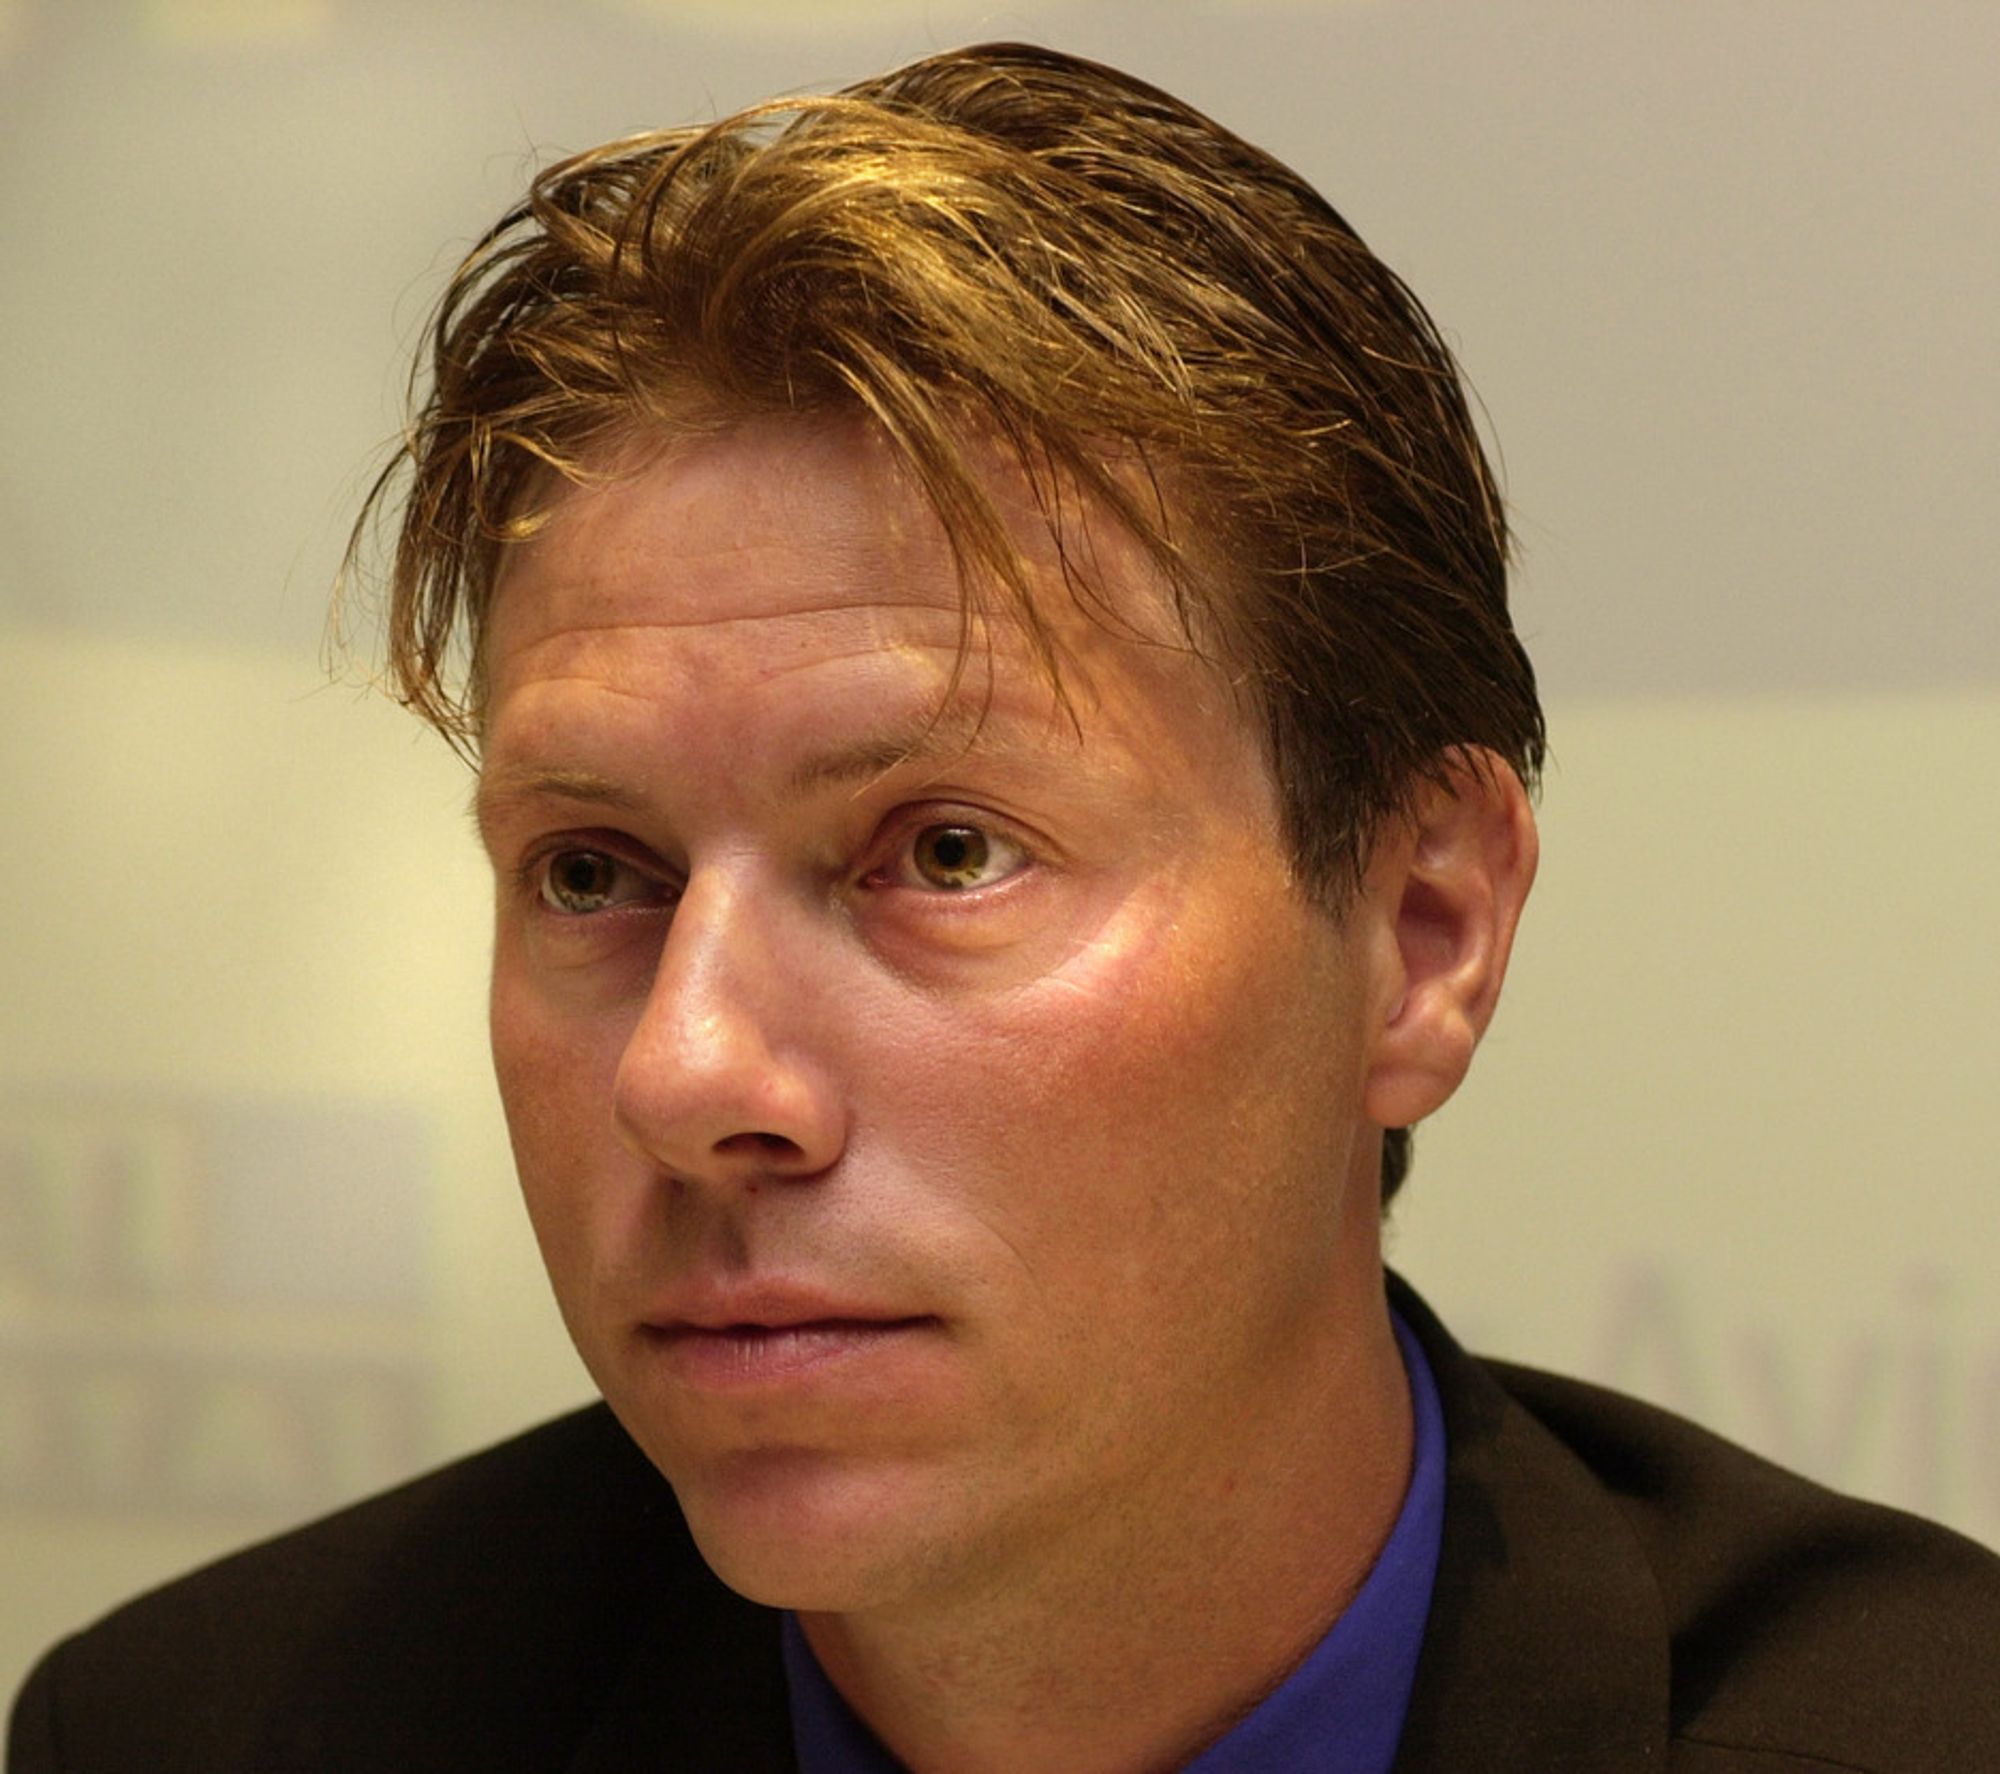 SELSKAP: Svein Erik Davidsen (40), administrerende direktør i Canal Digital Norge, synes det blir for ensomt å skulle være selvstendig næringsdrivende.